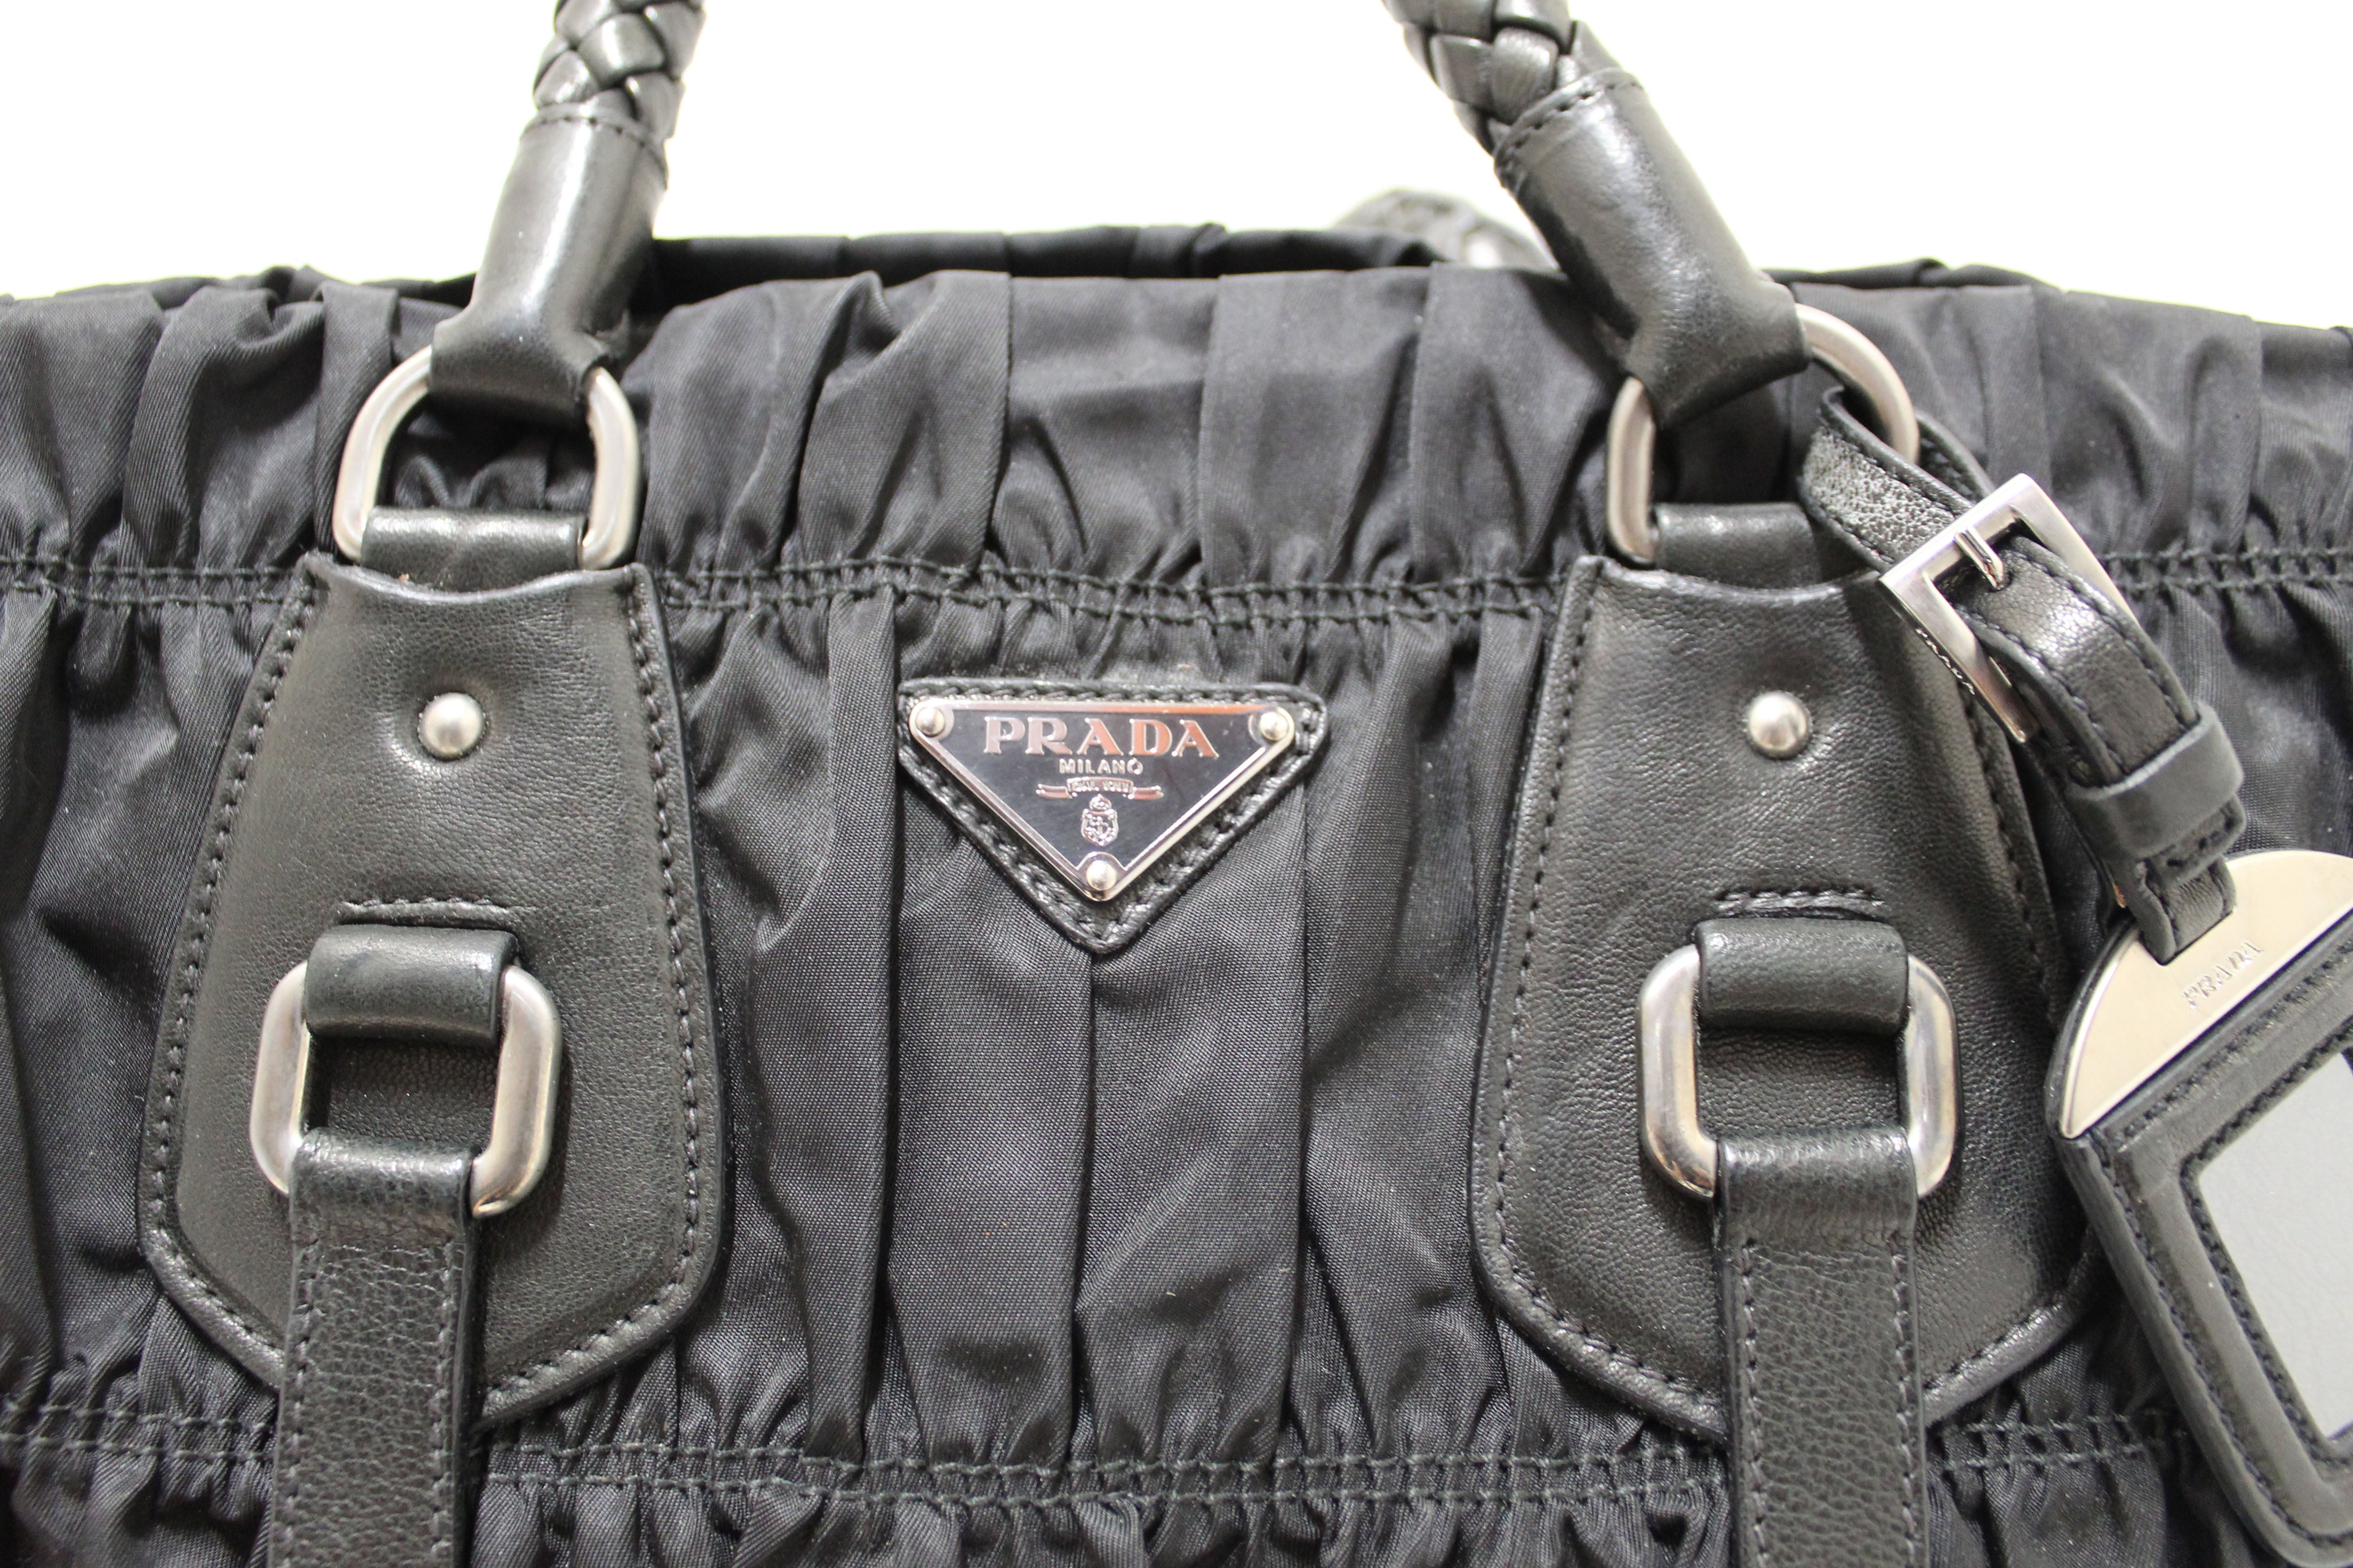 Authentic Prada Black Medium Nylon Shoulder Bag